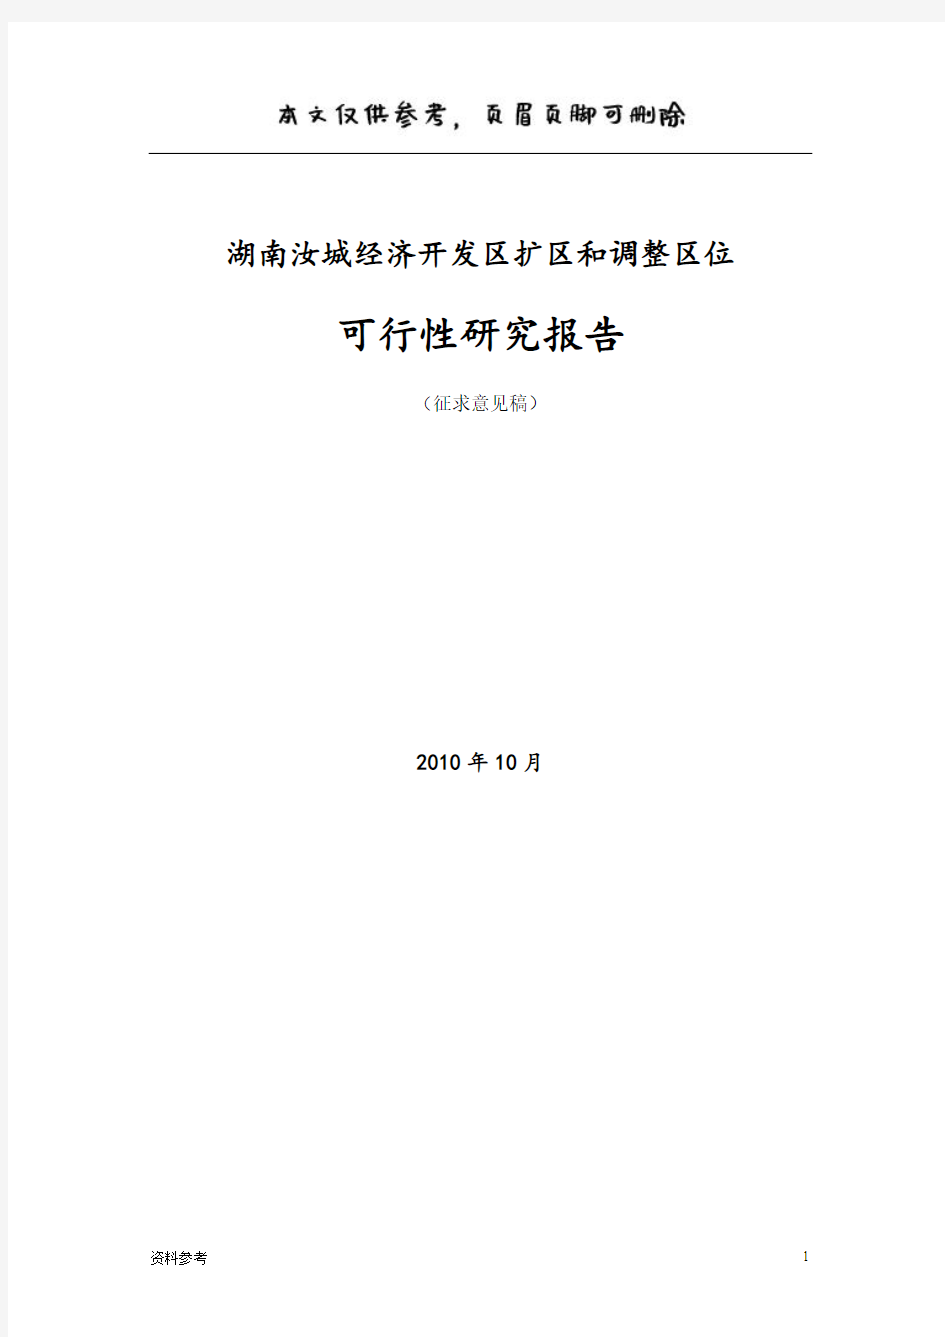 湖南汝城经济开发区扩区和调整区位可行性研究报告(仅供参照)